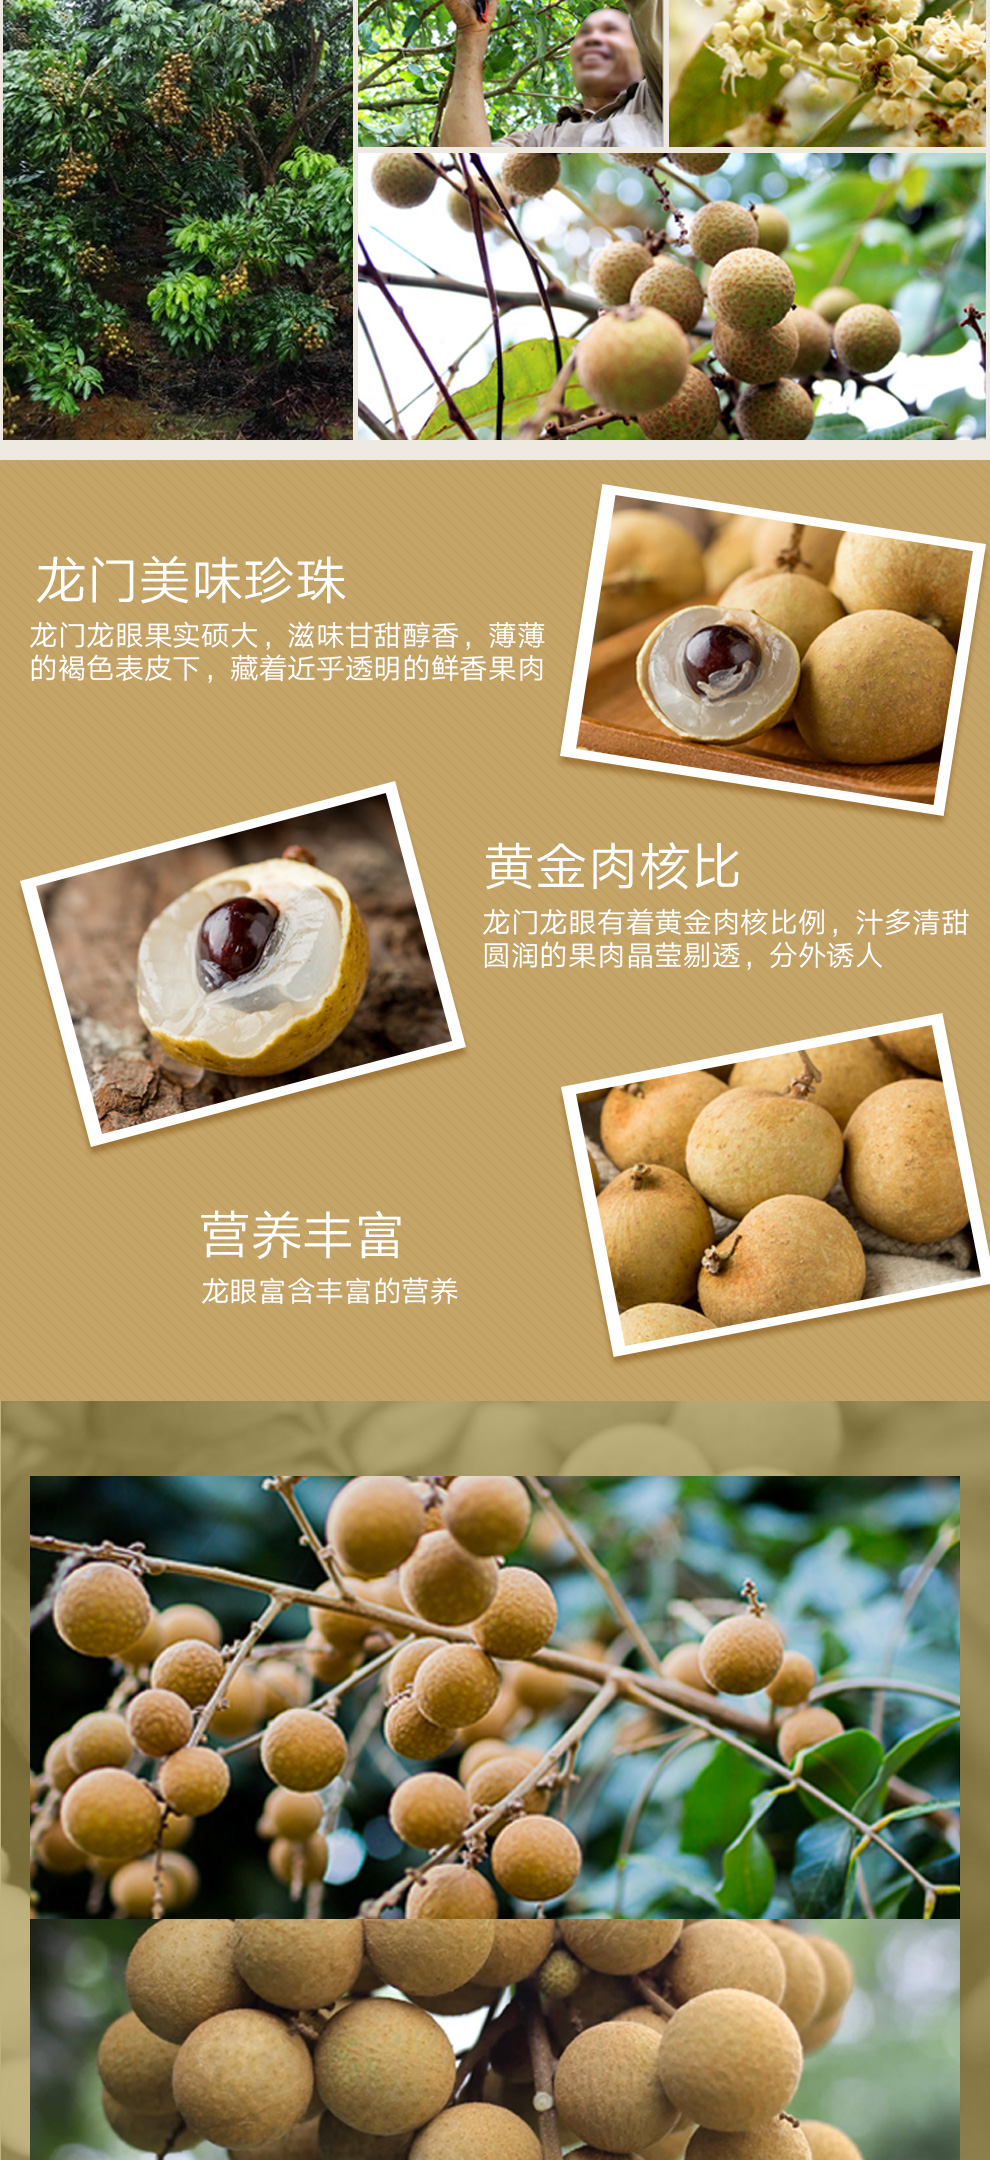 广东龙门黄壳石硖龙眼 新鲜水果  广东桂圆特产  顺丰包邮